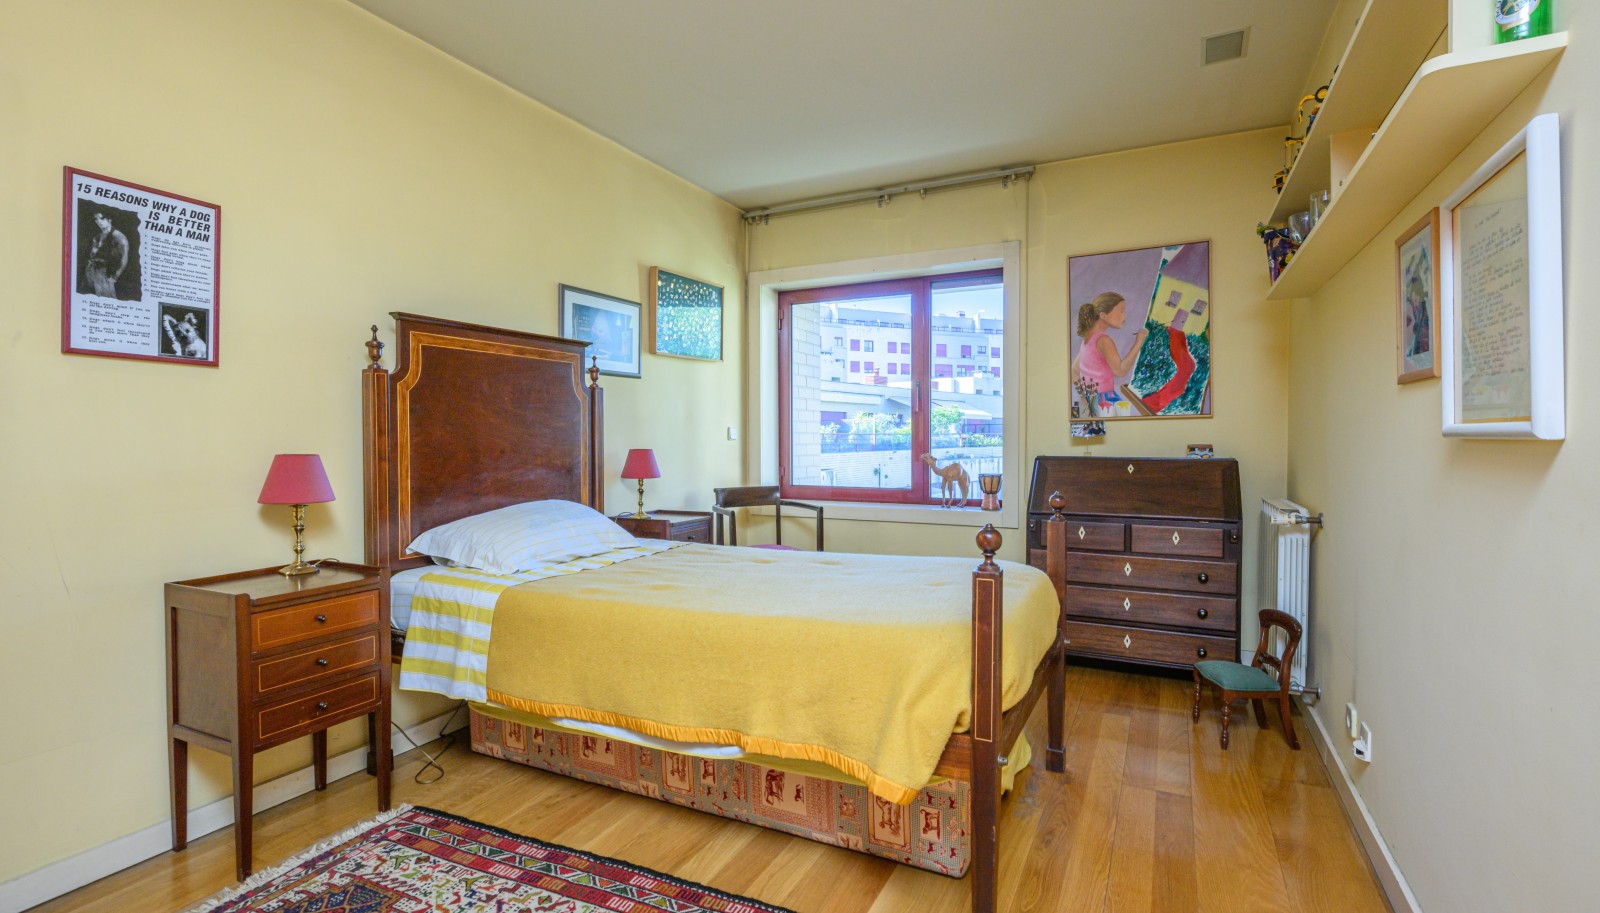 4 bedroom duplex apartment, for sale, in Ramalde, Porto, Portugal_235506